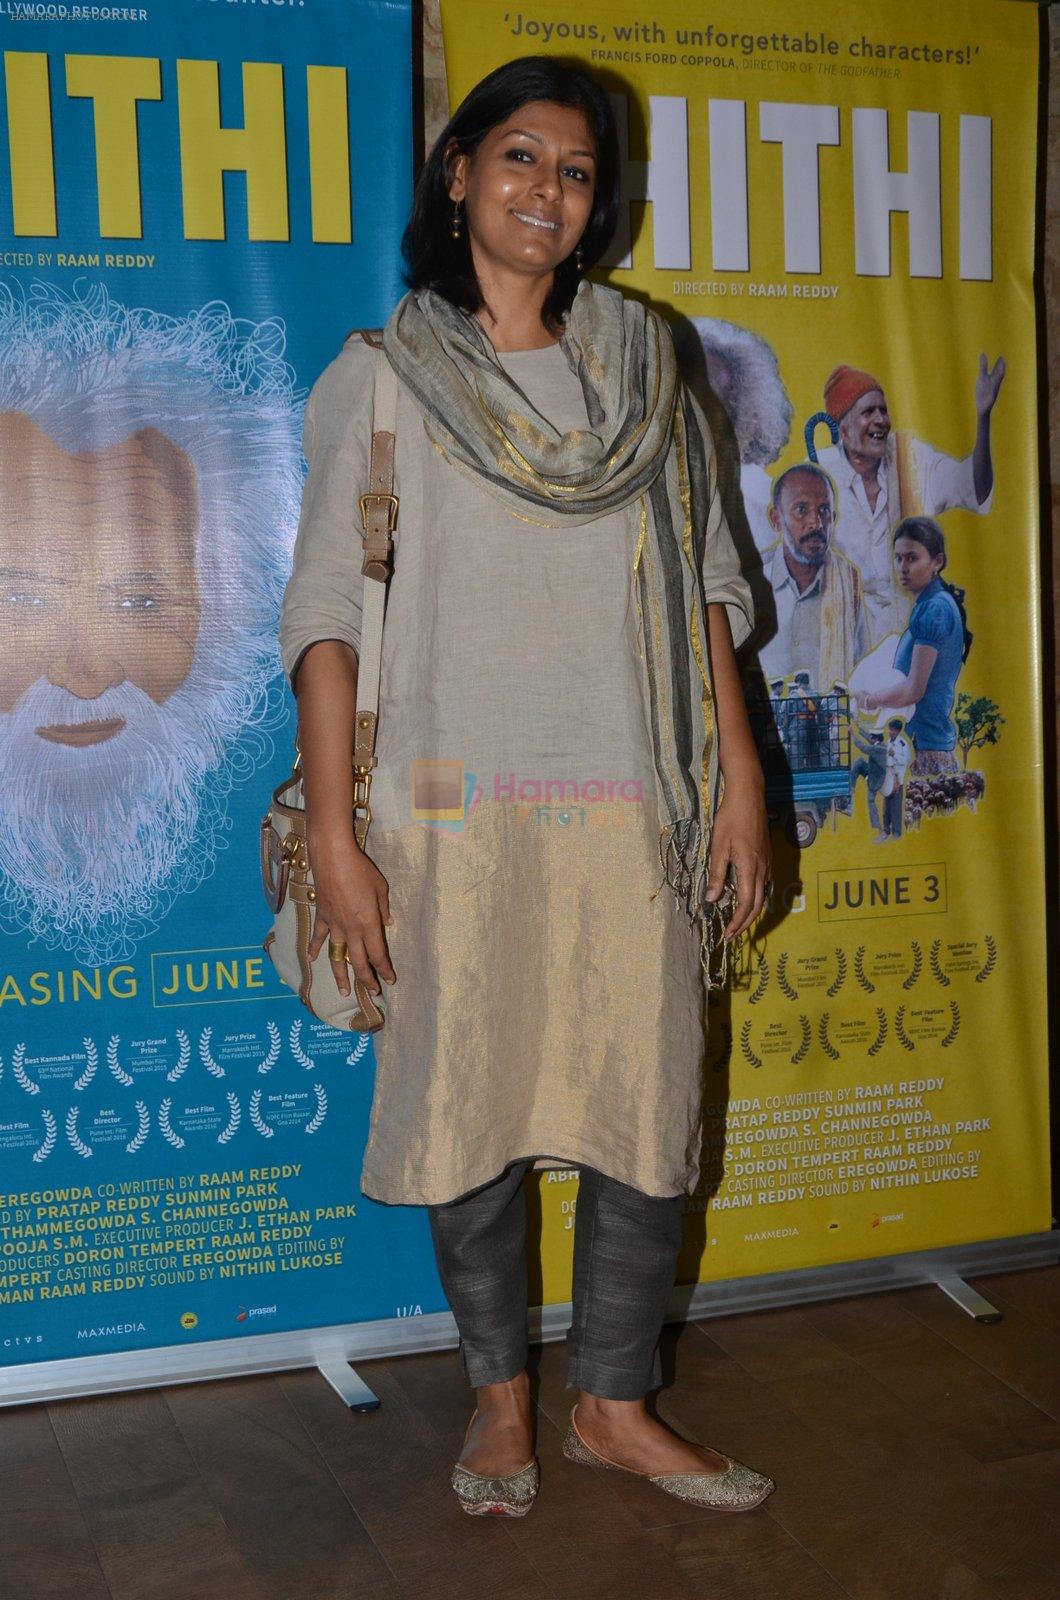 Nandita Das at Kiran Rao hosts Thithi screening on 28th May 2016